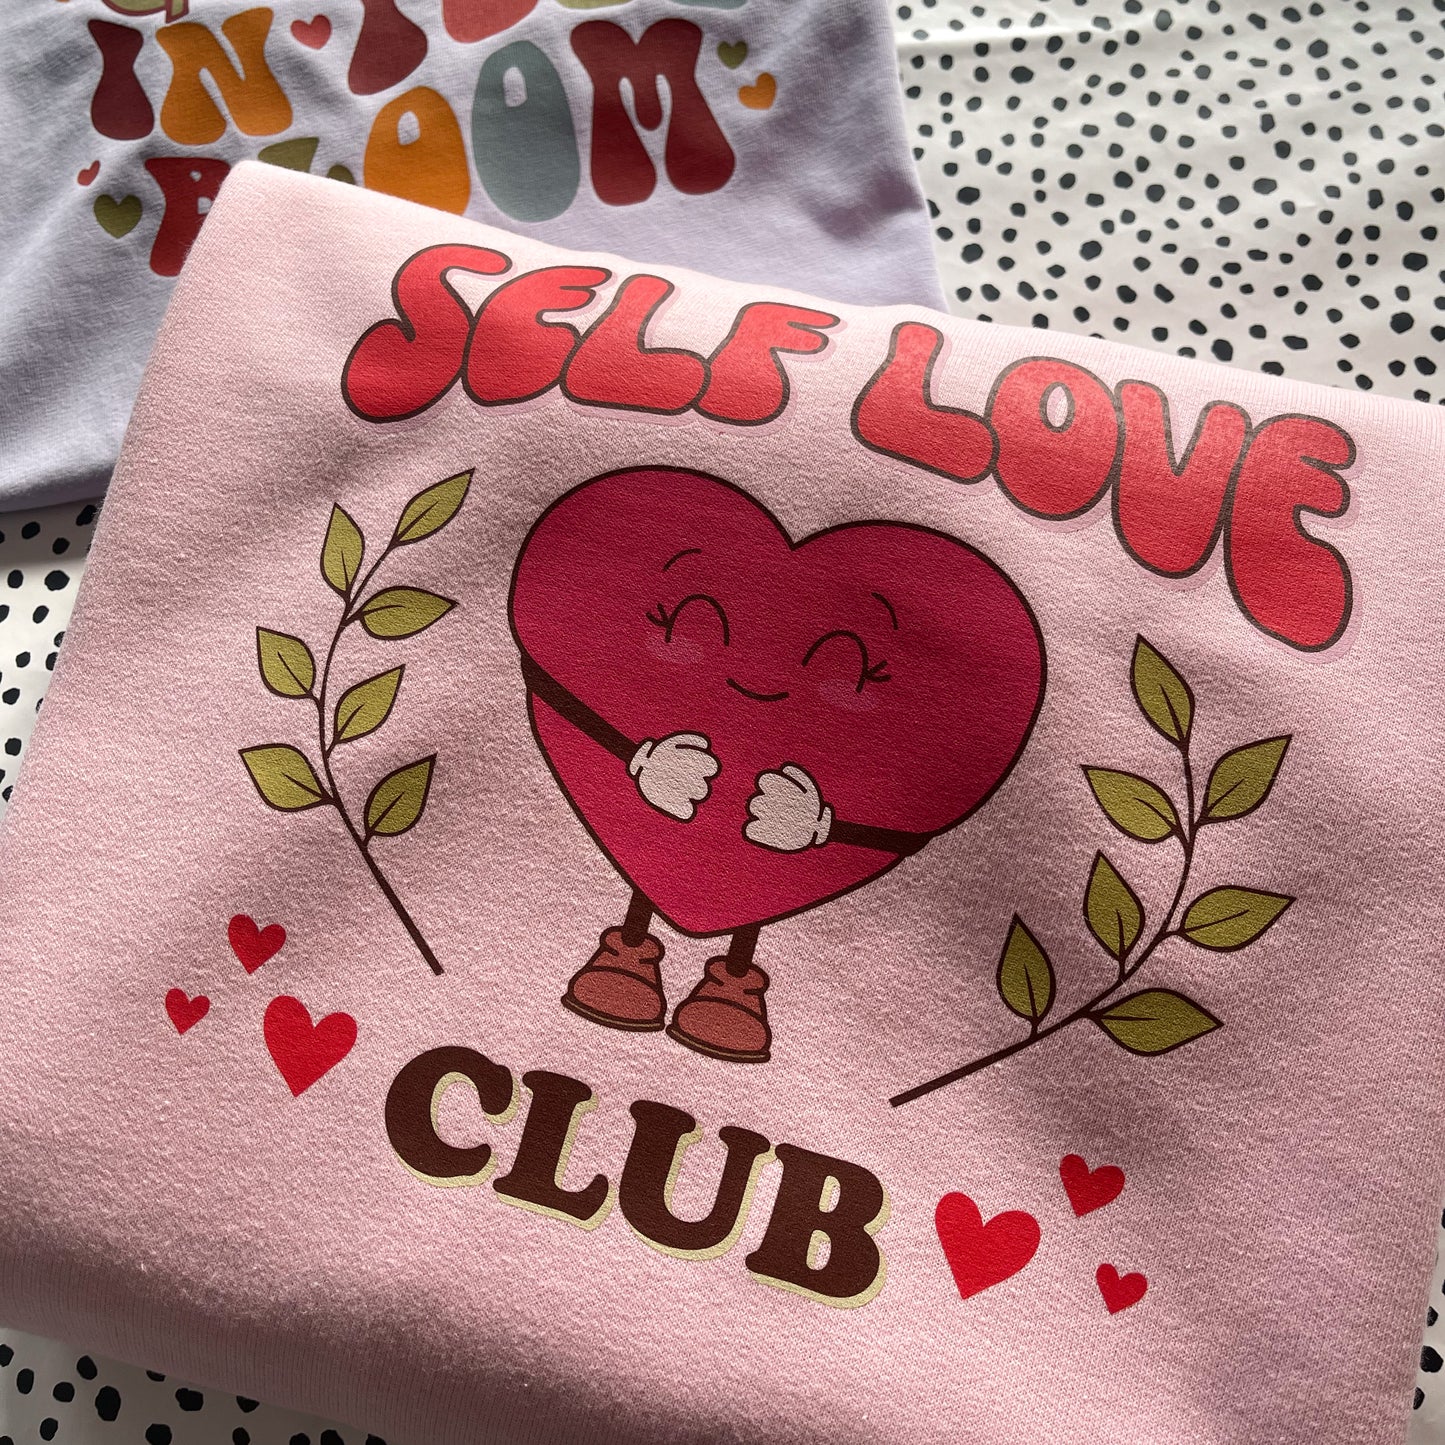 Self Love Club Adult Hoodie